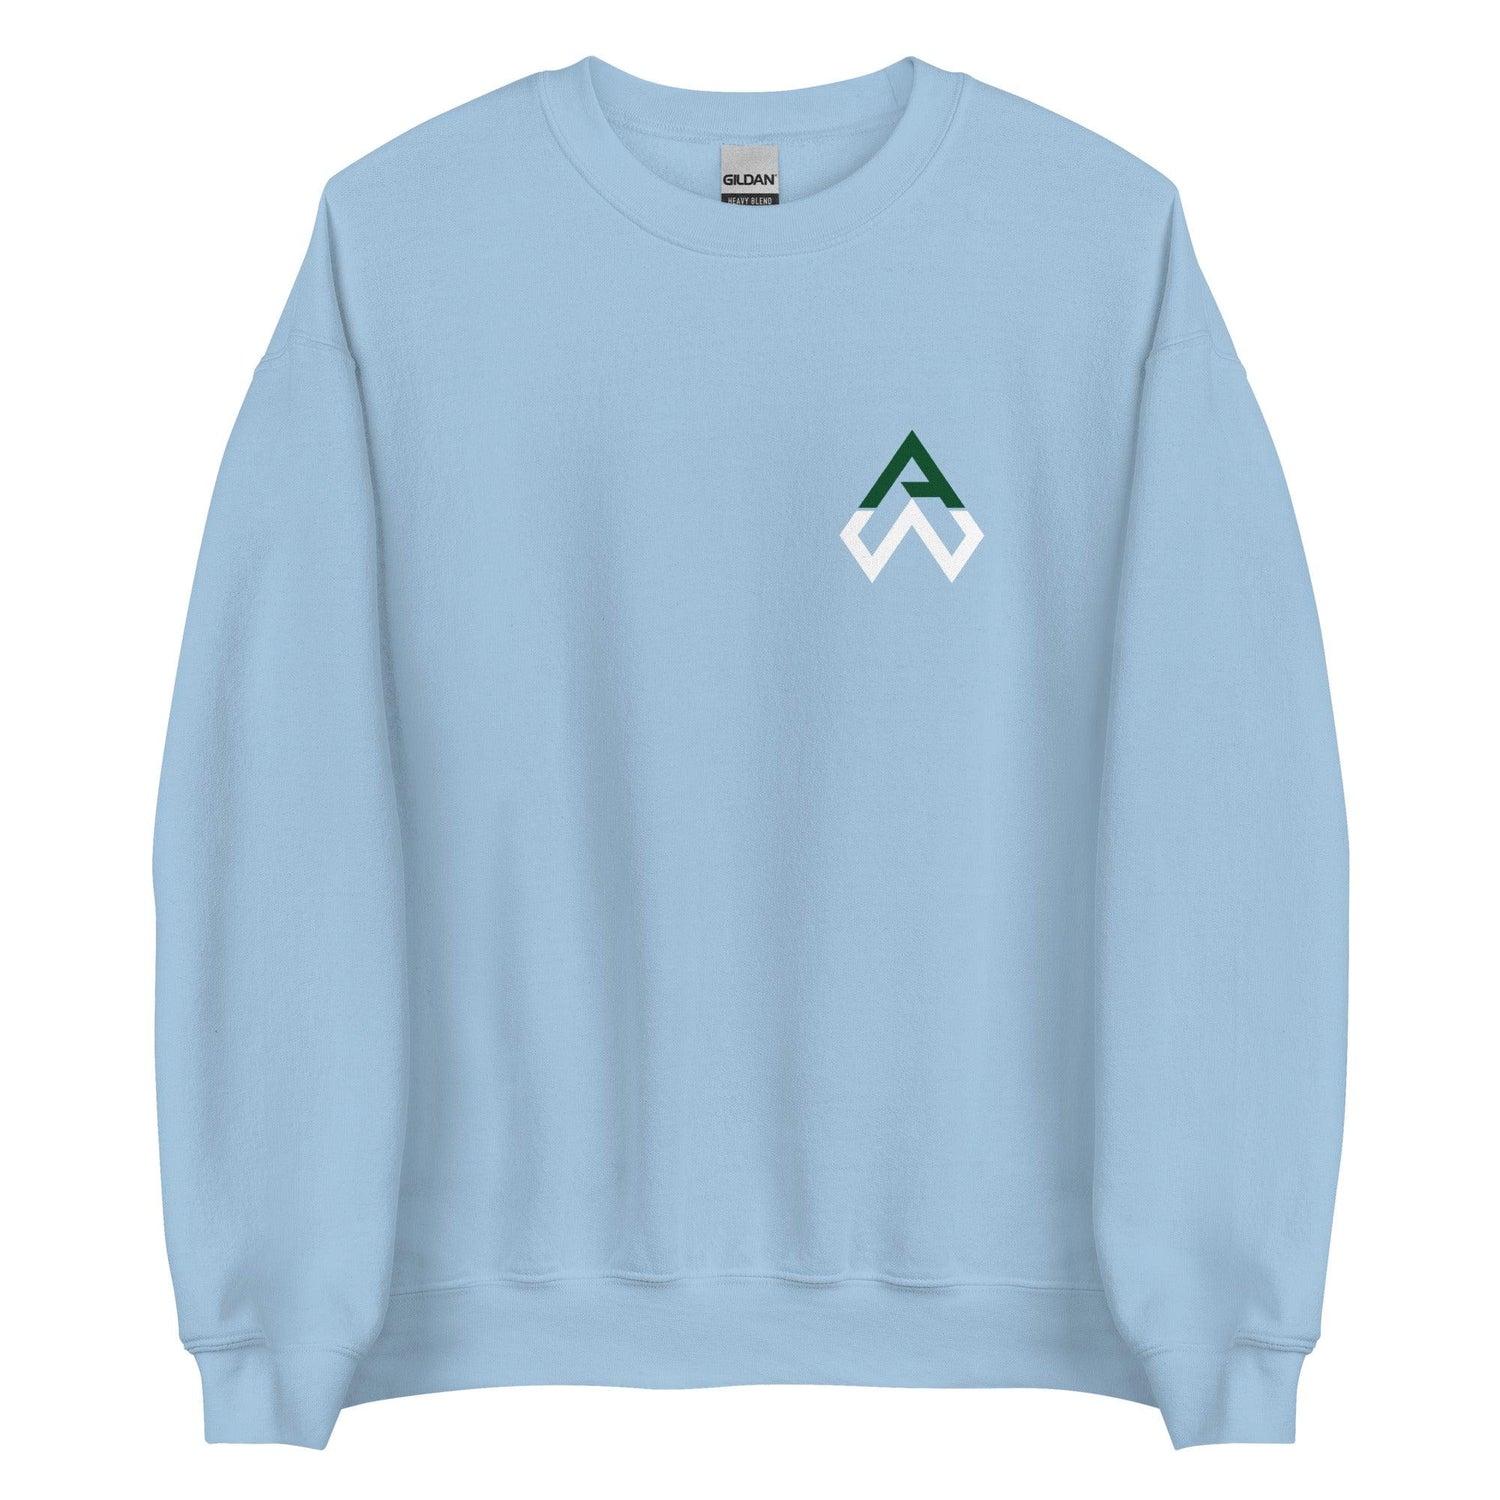 Aidan Weaver “AW” Sweatshirt – Fan Arch